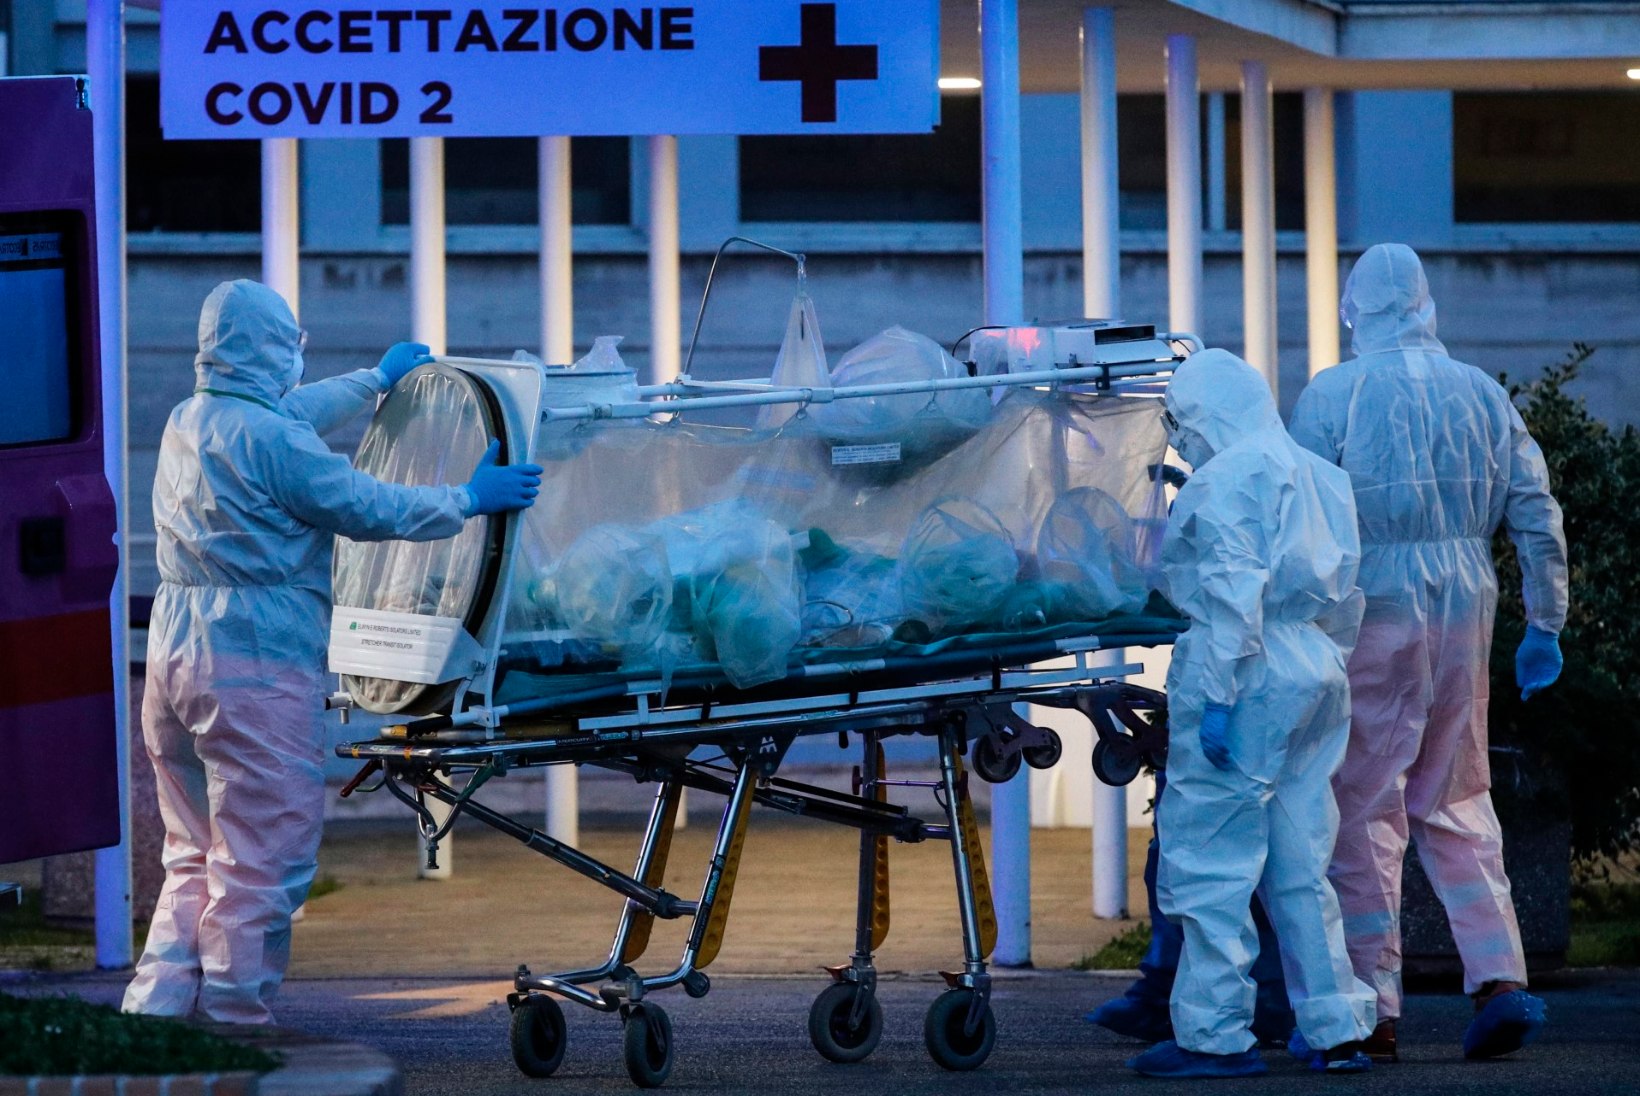 KOROONAVIIRUS LEVIB 171 RIIGIS: 217 000 nakatunut, üle 8900 surnu ja 84 300 tervenenut. Itaalias suri ühe päevaga 475 patsienti